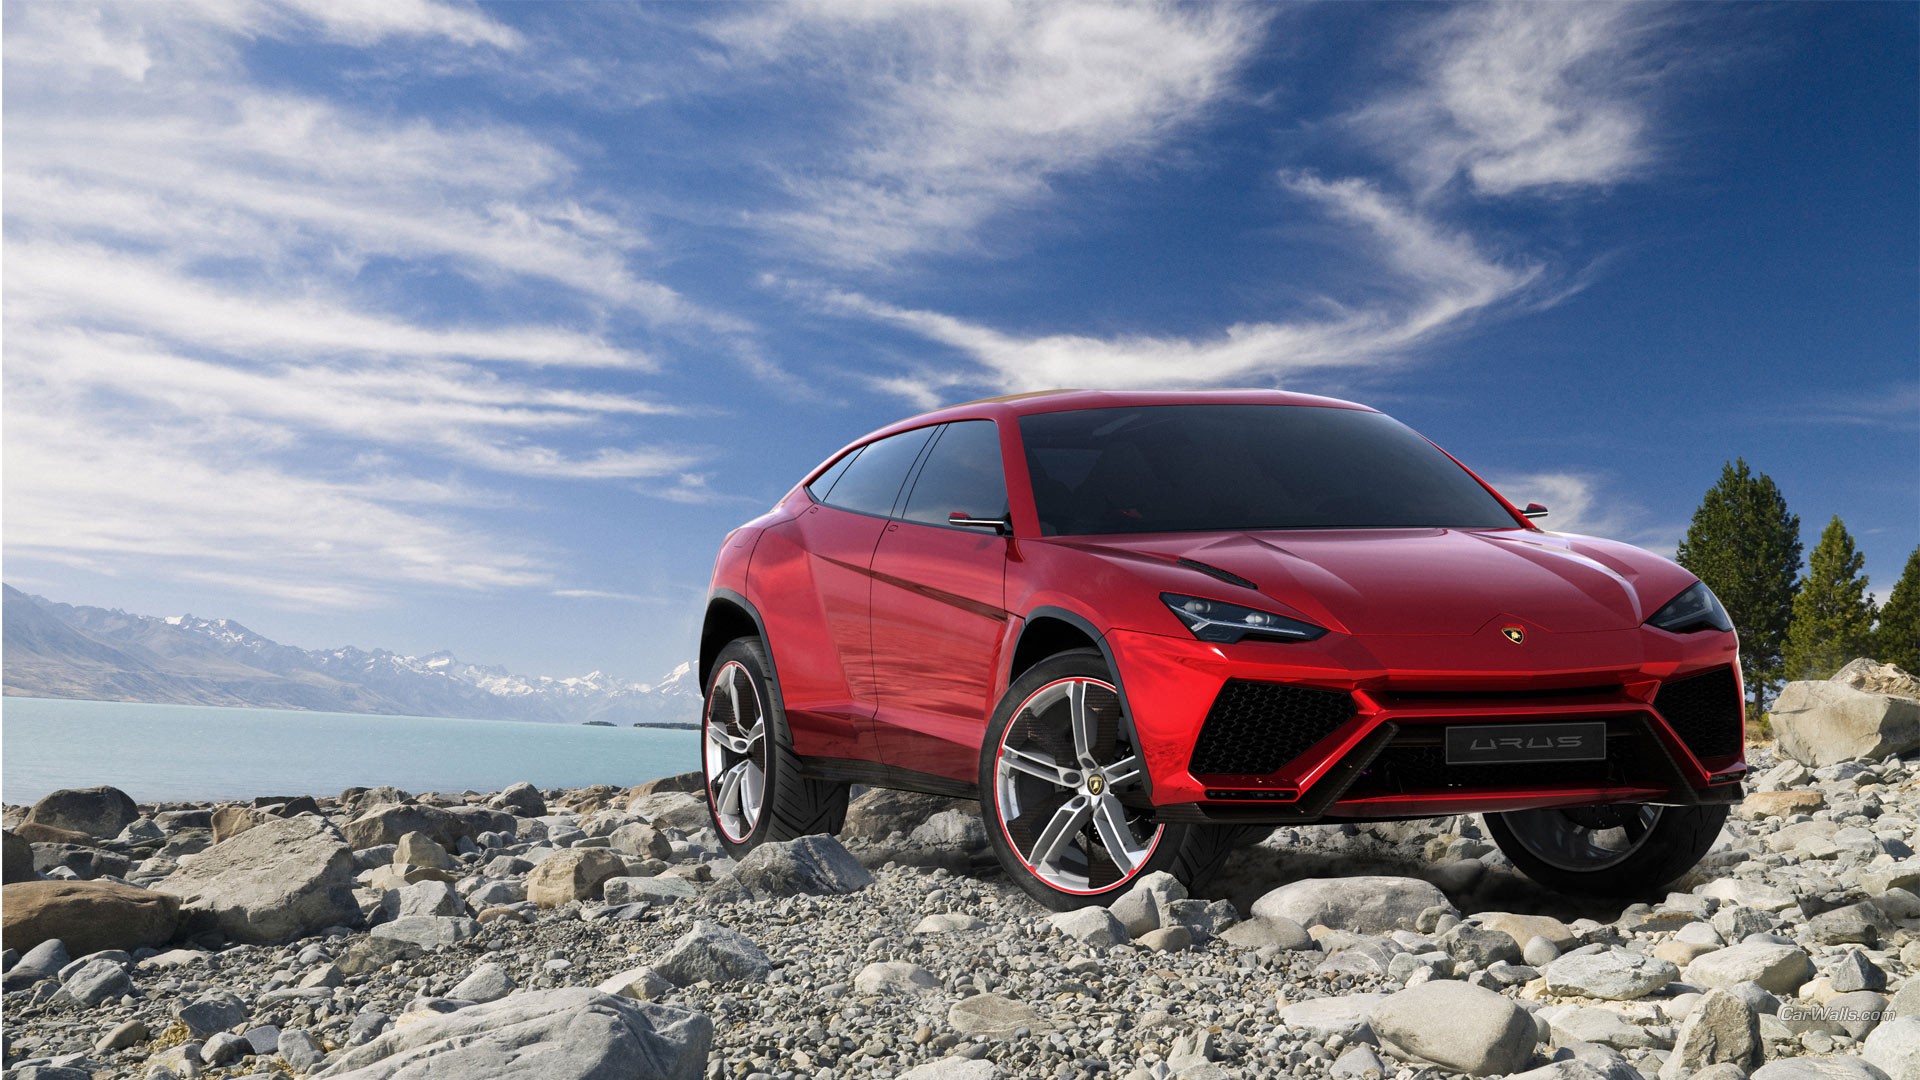 Lamborghini Urus, Concept Cars, Red Cars, SUV Wallpaper